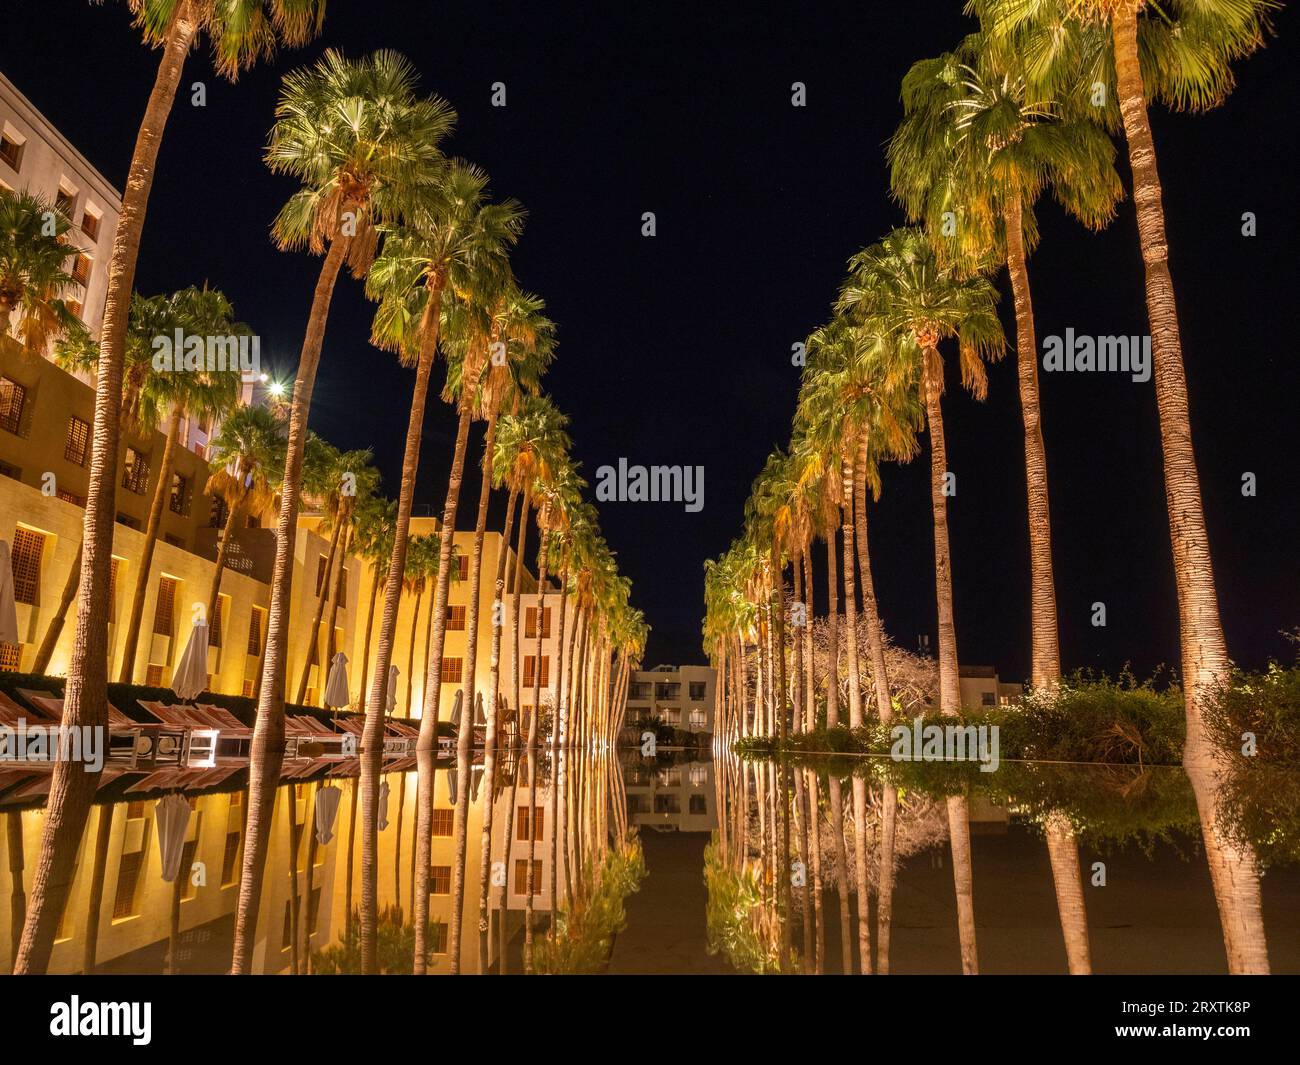 Pernottamento al Kempinski Hotel Ishtar, un resort di lusso a cinque stelle sul Mar morto ispirato ai Giardini sospesi di Babilonia, Giordania, Medio Oriente Foto Stock